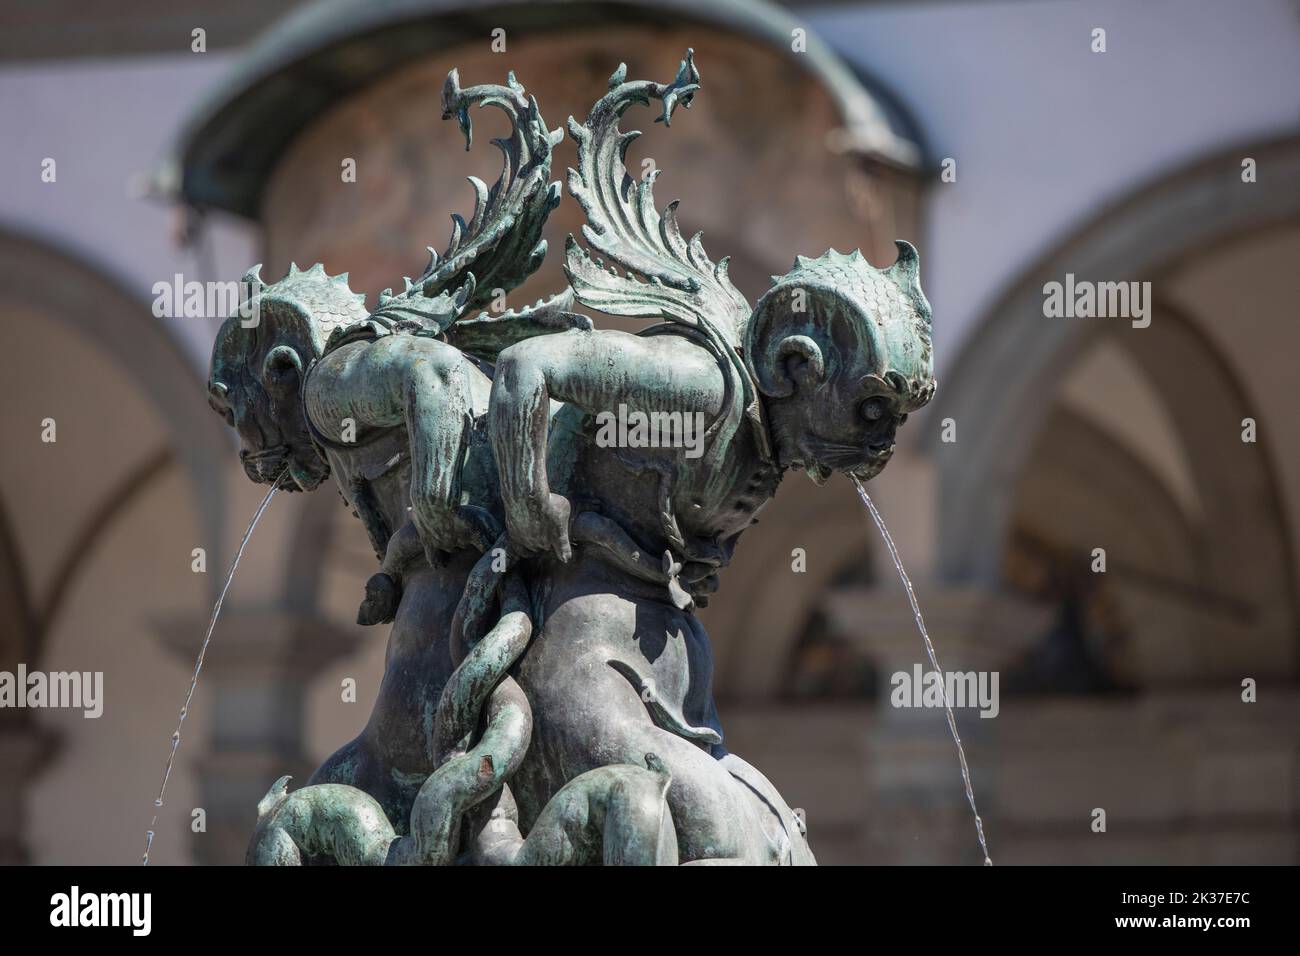 Particolare delle fontane gemelle di creature marine che si trovano in Piazza Santissima Annunziata a Firenze. Foto Stock